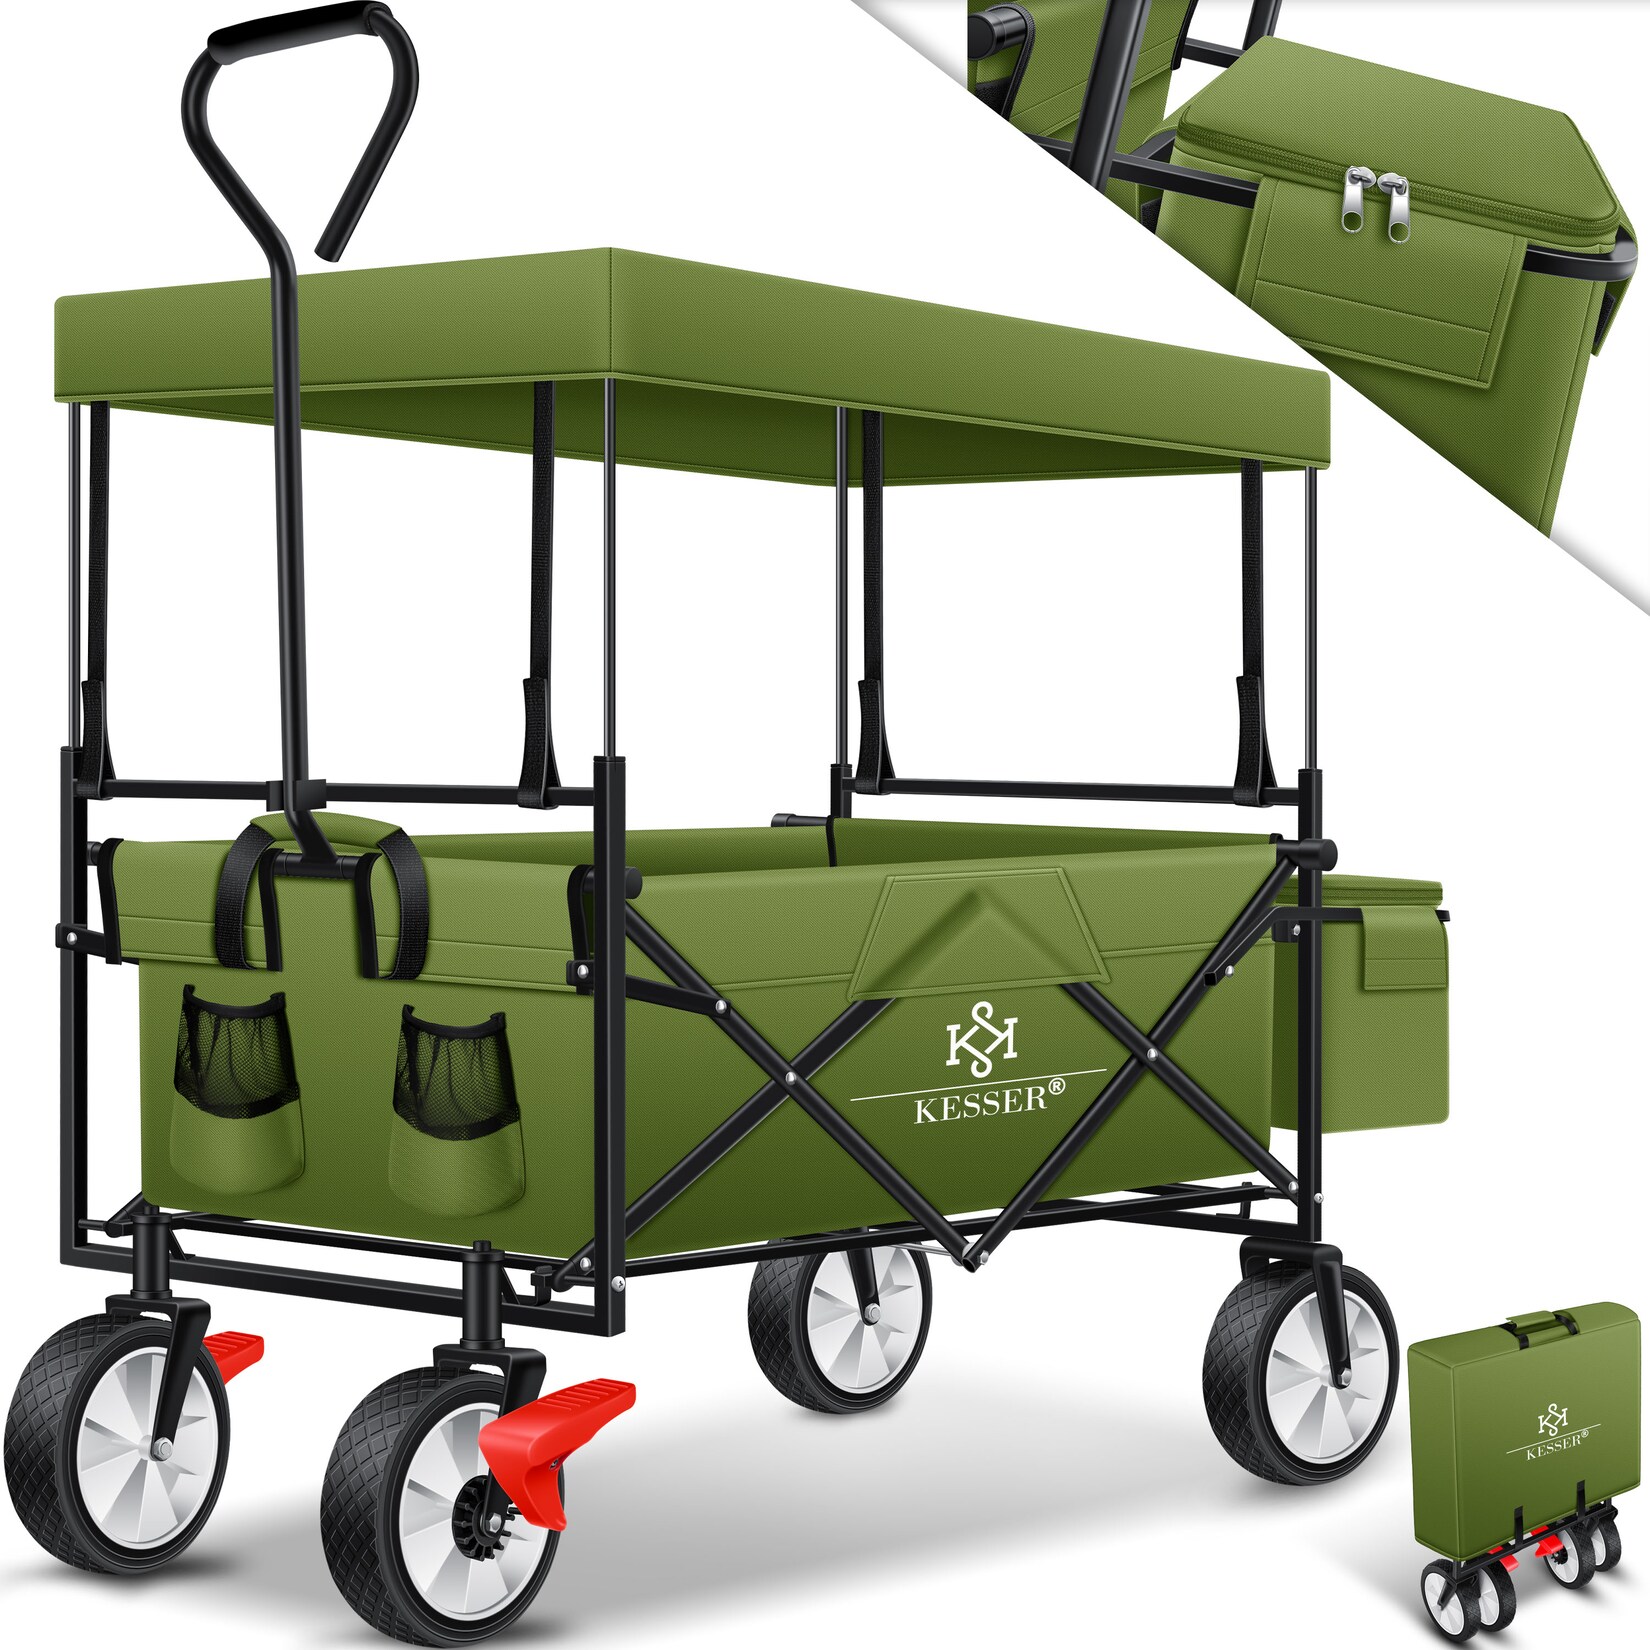 KESSER® Bollerwagen faltbar mit Dach Handwagen Transportkarre Gerätewagen   inkl. 2 Netztaschen und Einer Außentasche   